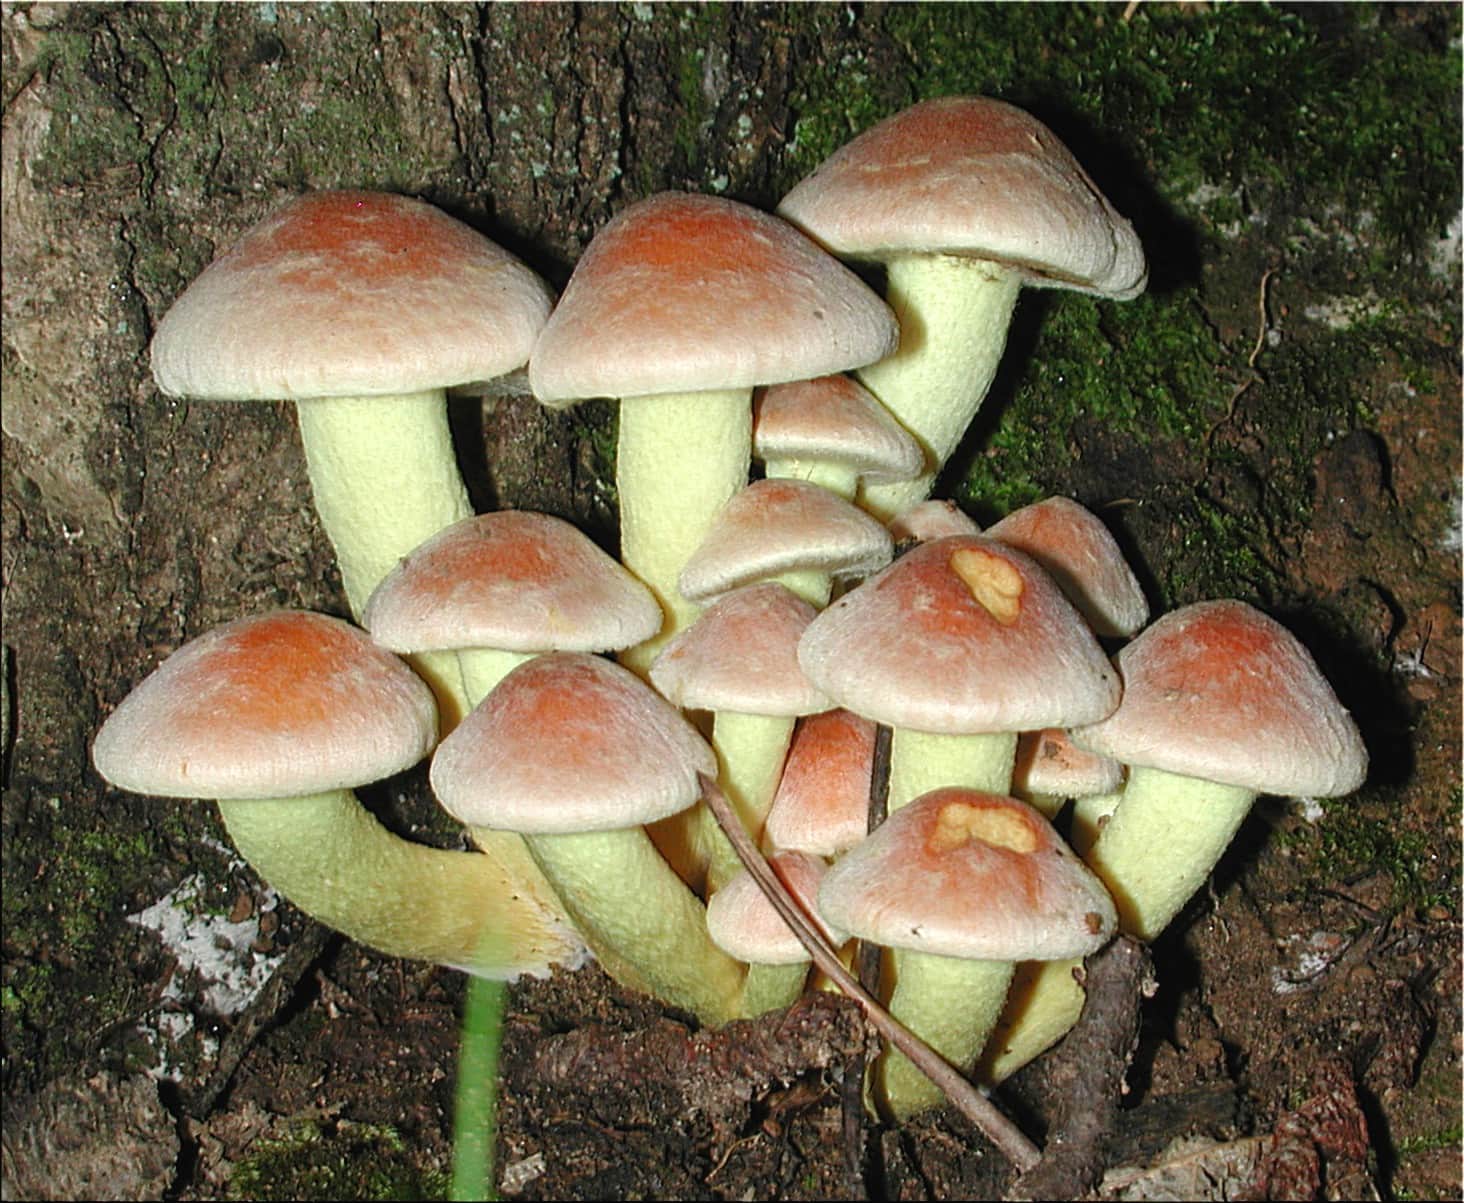 蘑菇孢子照片图片